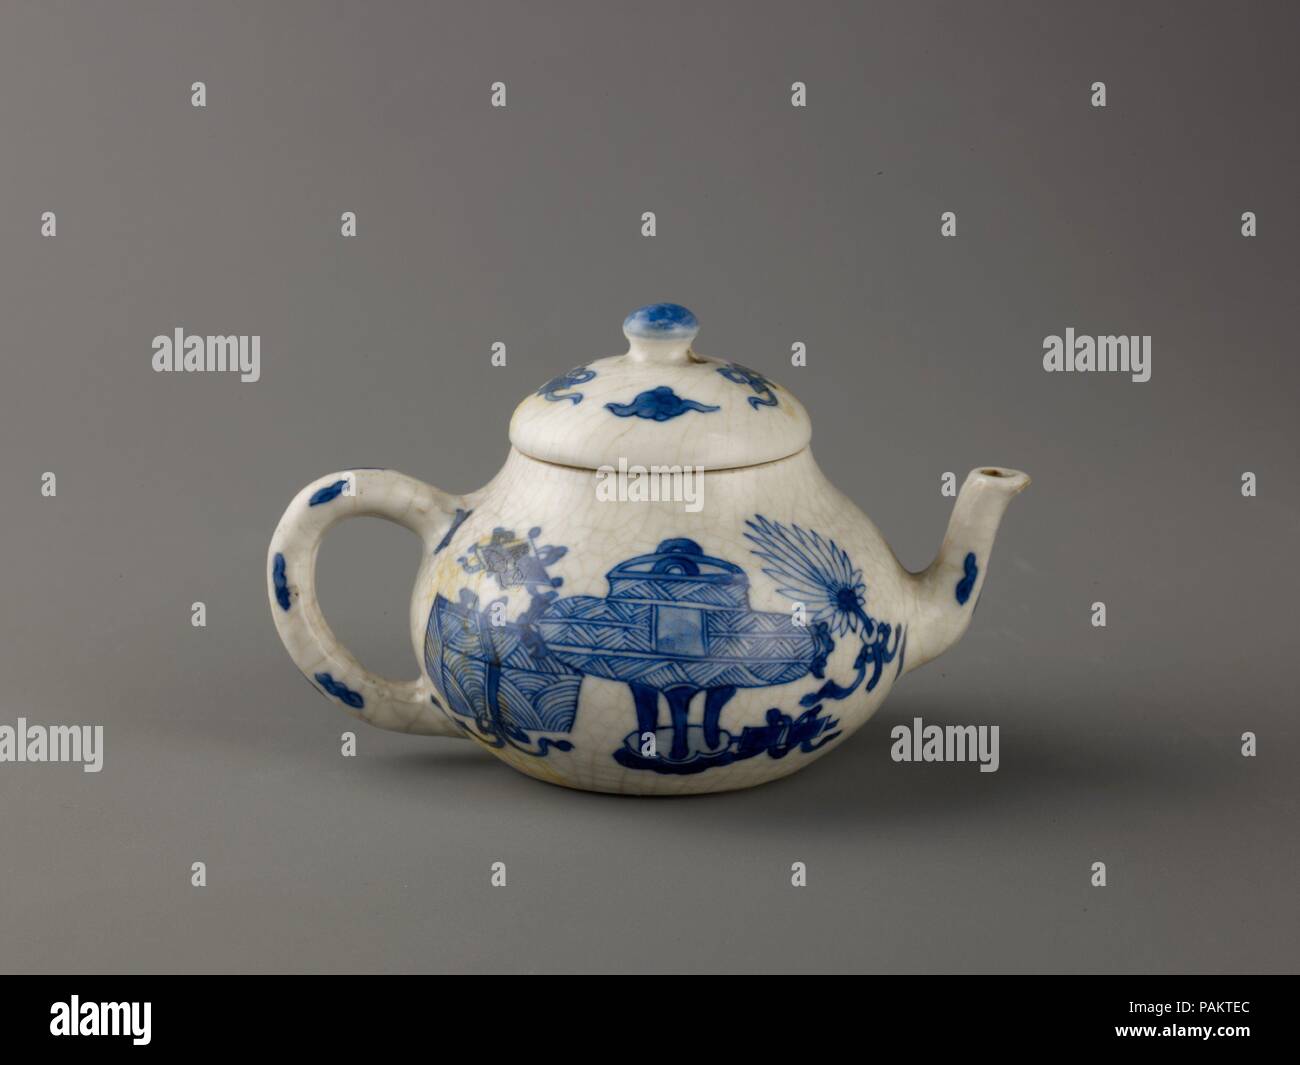 Desconocido Juego de vajilla de Porcelana China de 44 Piezas, vajilla de  Porcelana Azul y Blanca de China, Servicio de Mesa para Todo Tipo de  Platos